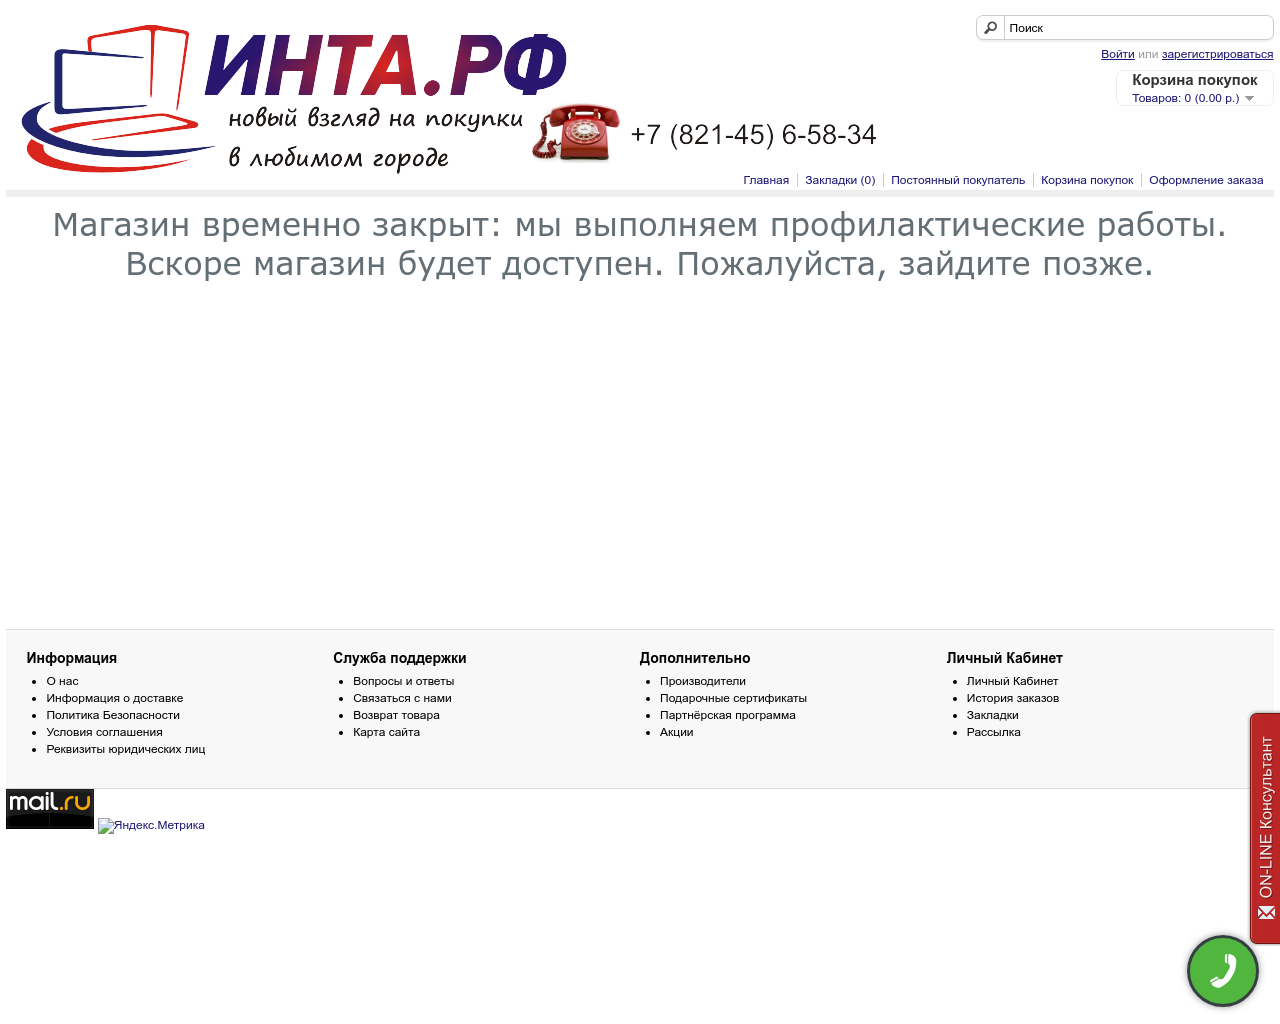 Изображение сайта intato.ru в разрешении 1280x1024